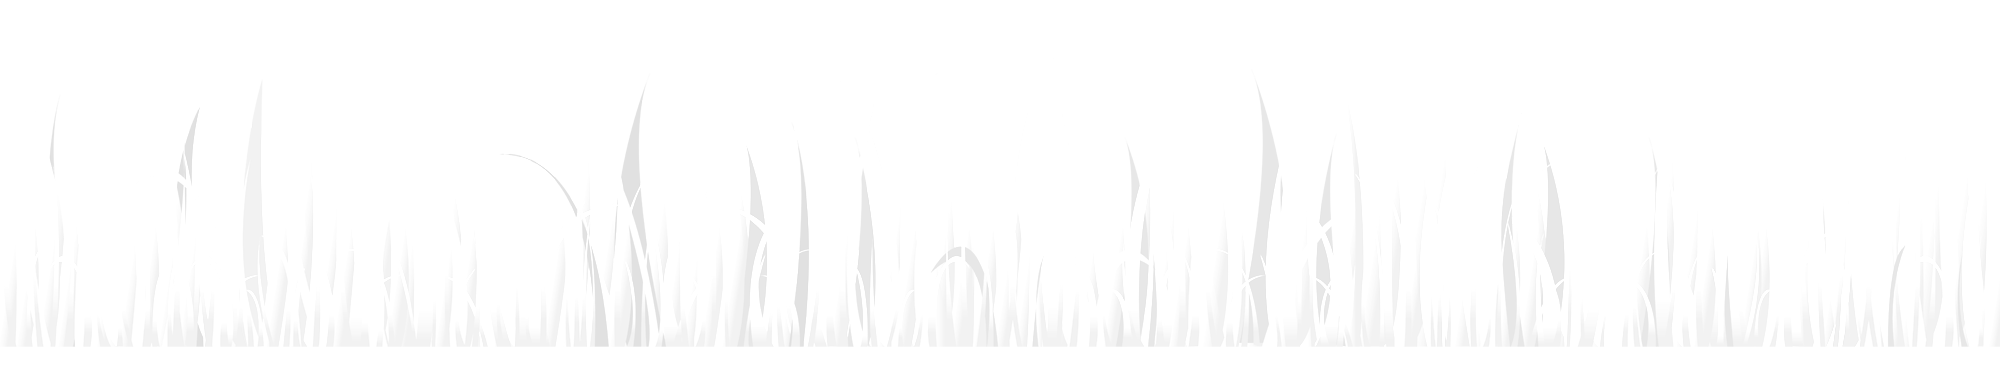 bw-grass